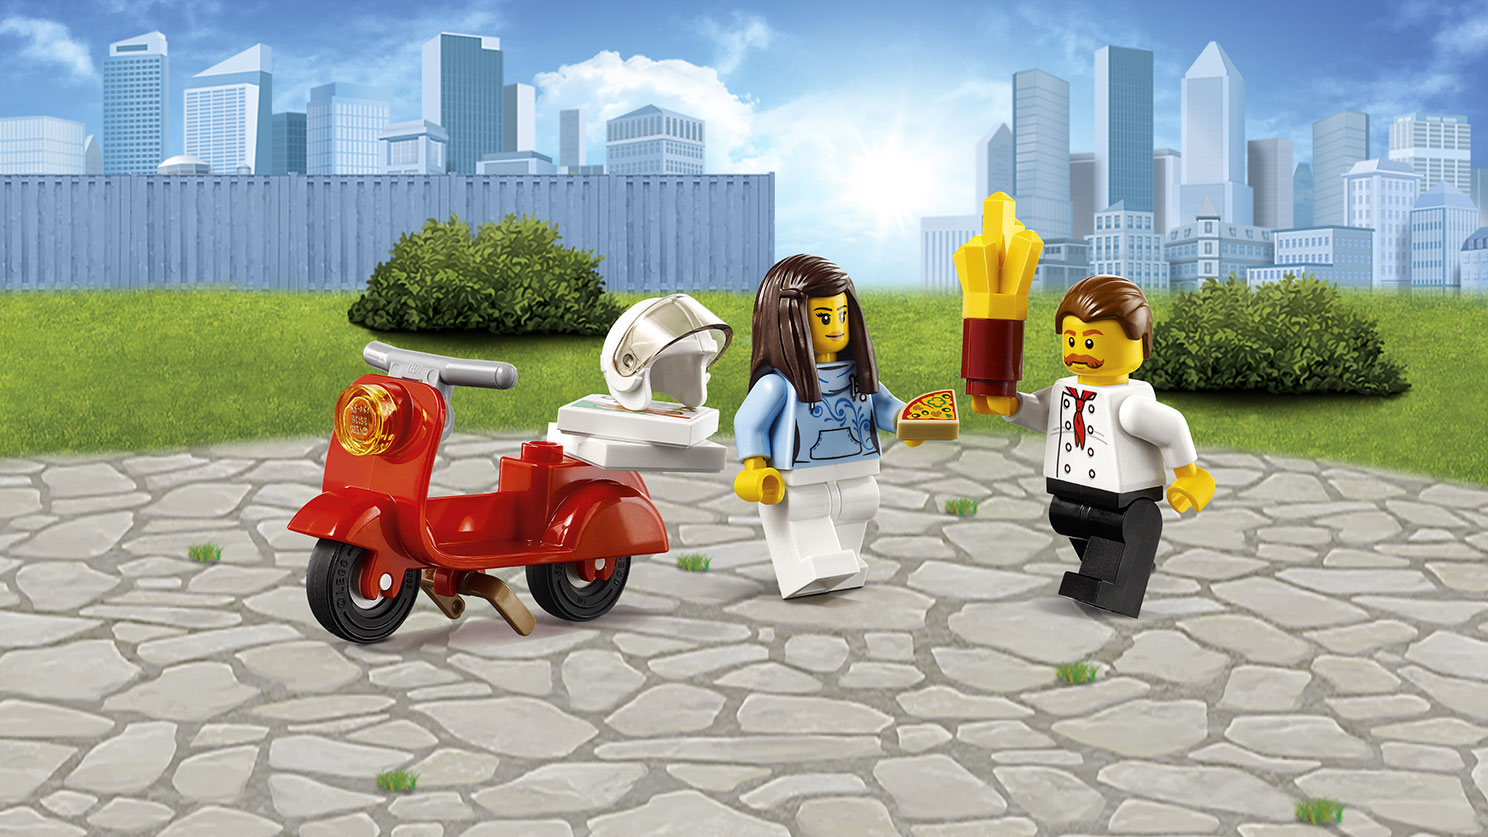 Lego City. Фургон-пиццерия  